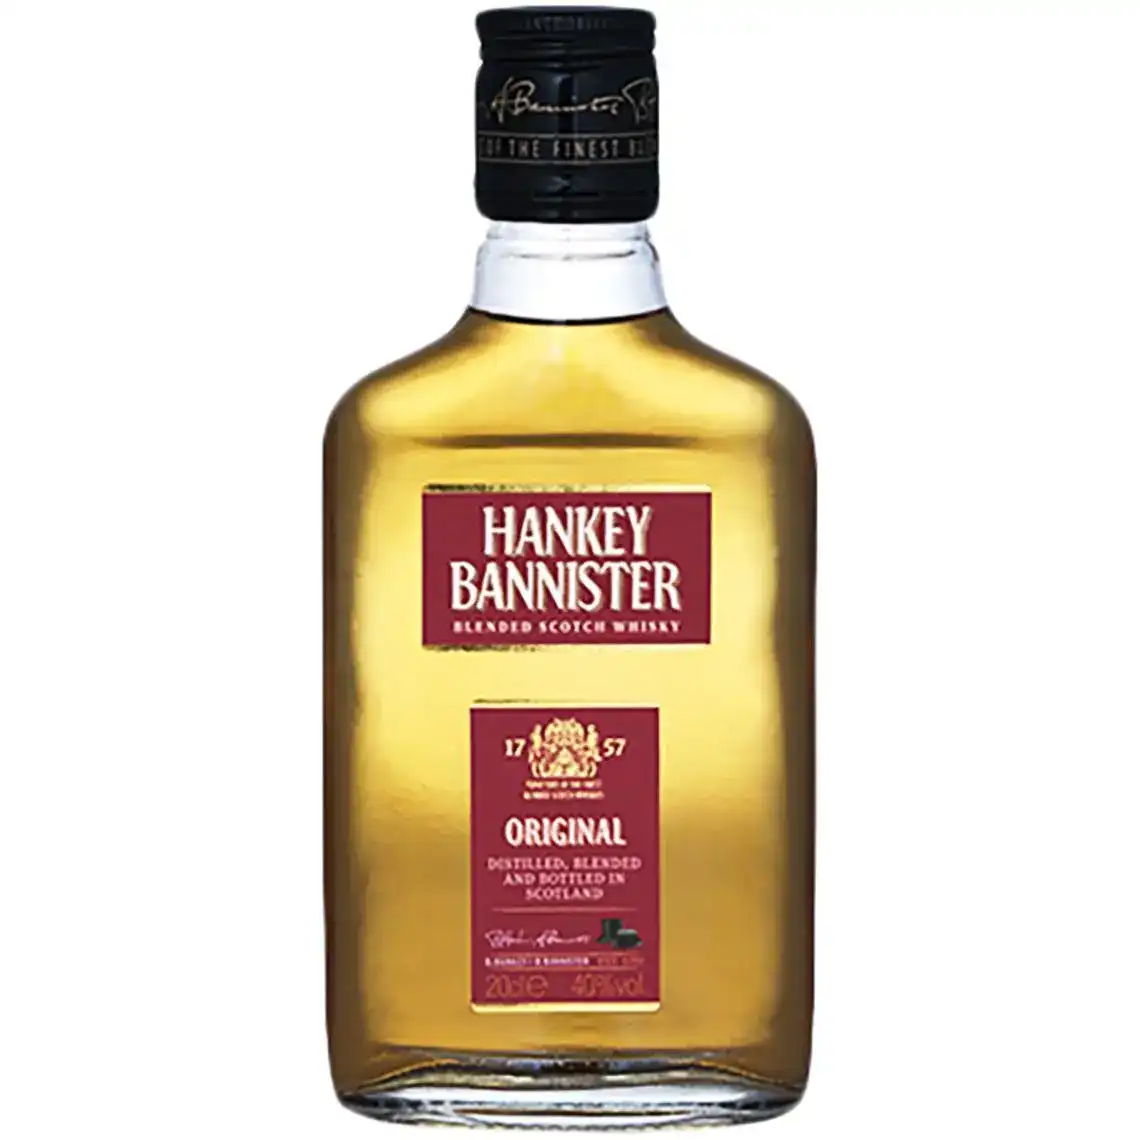 Віскі Hankey Bannister Original купажований 3 роки витримки 40% 0.2 л